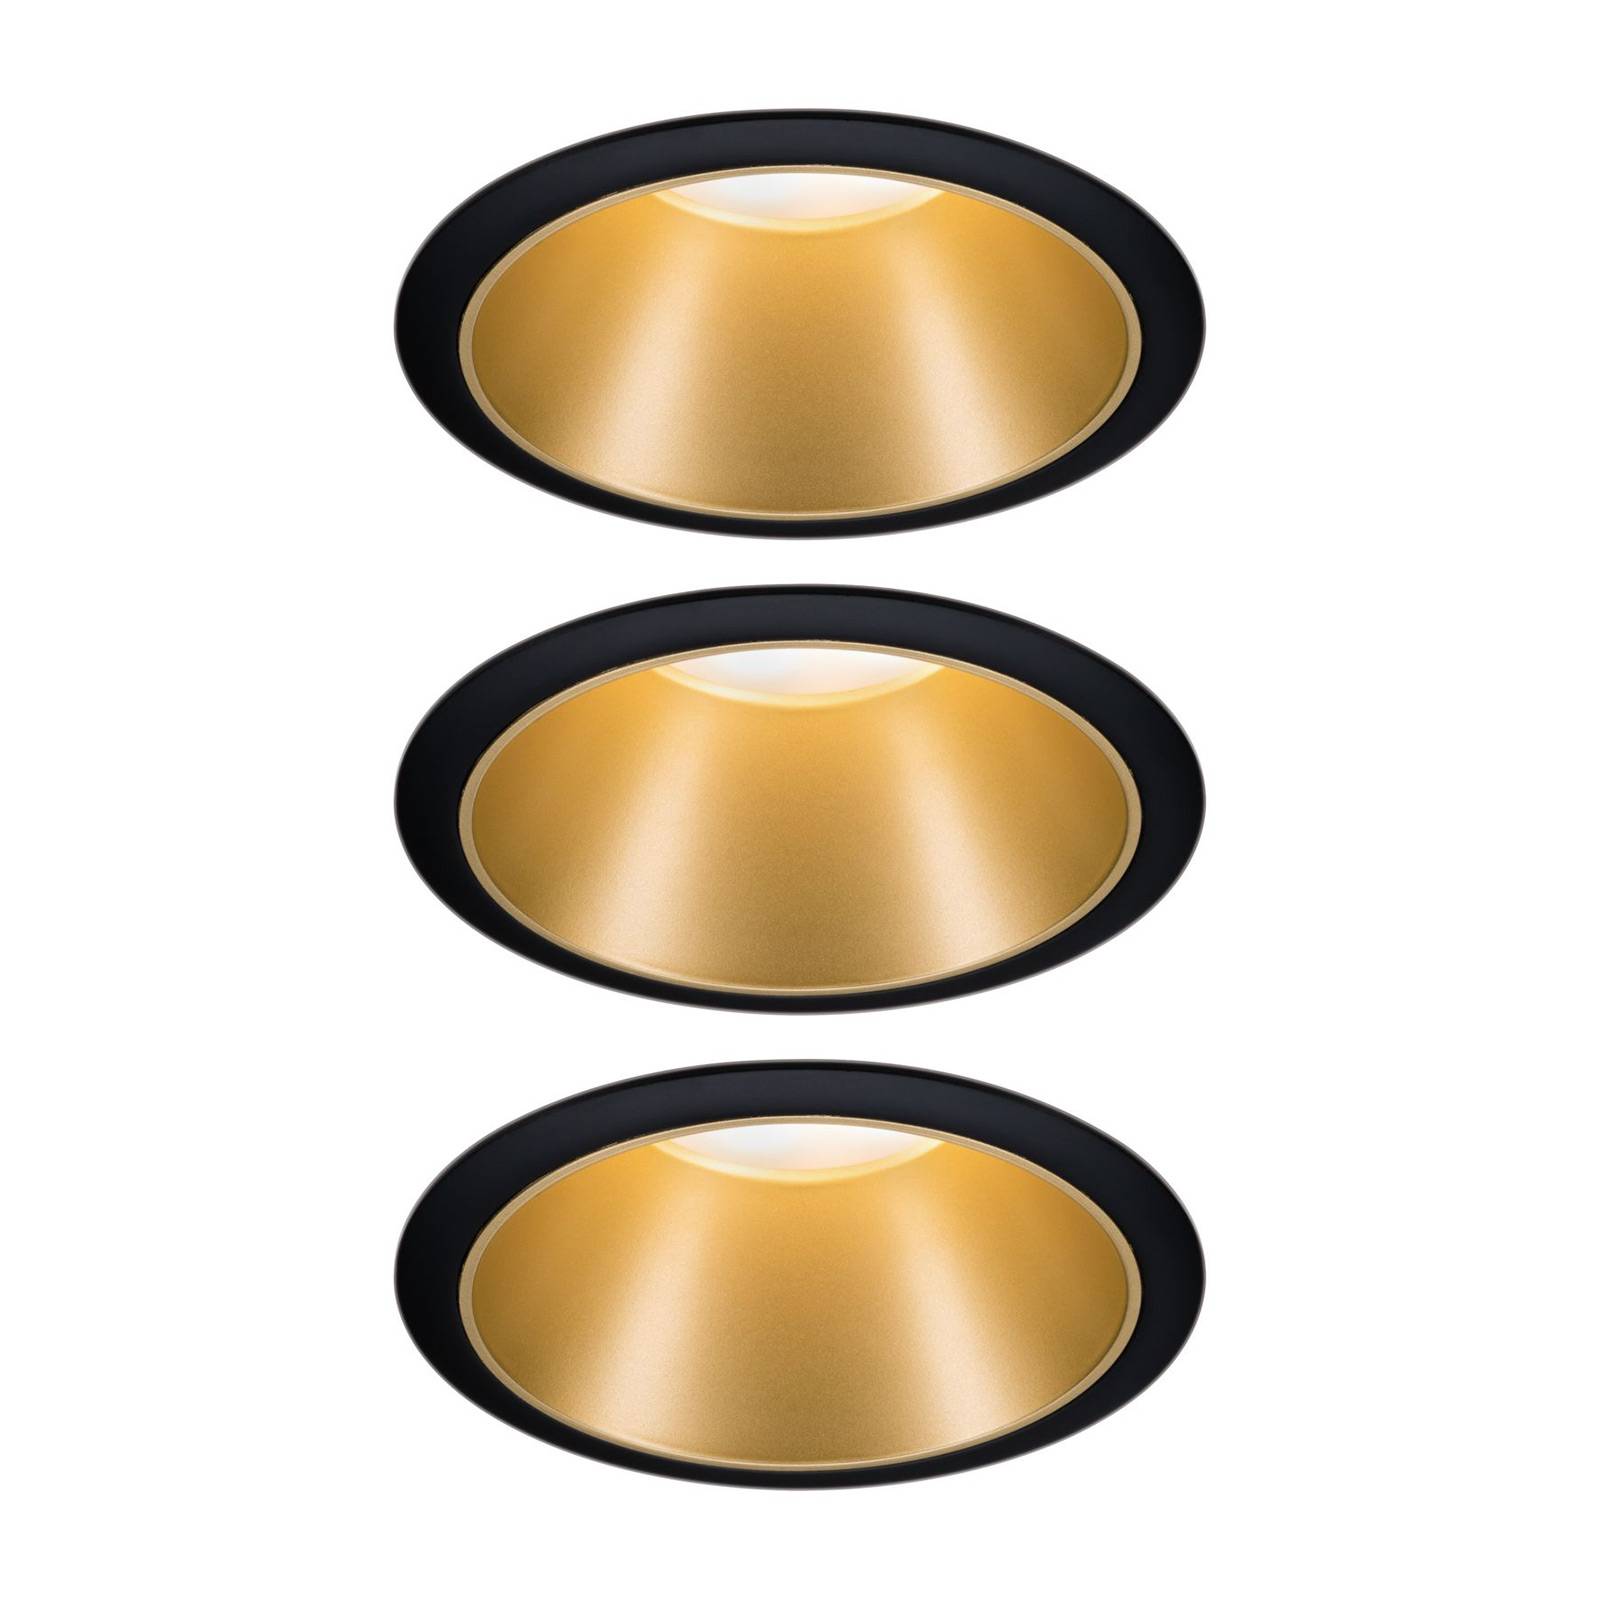 Paulmann Paulmann Cole LED spotlight, zlato-černý, 3ks